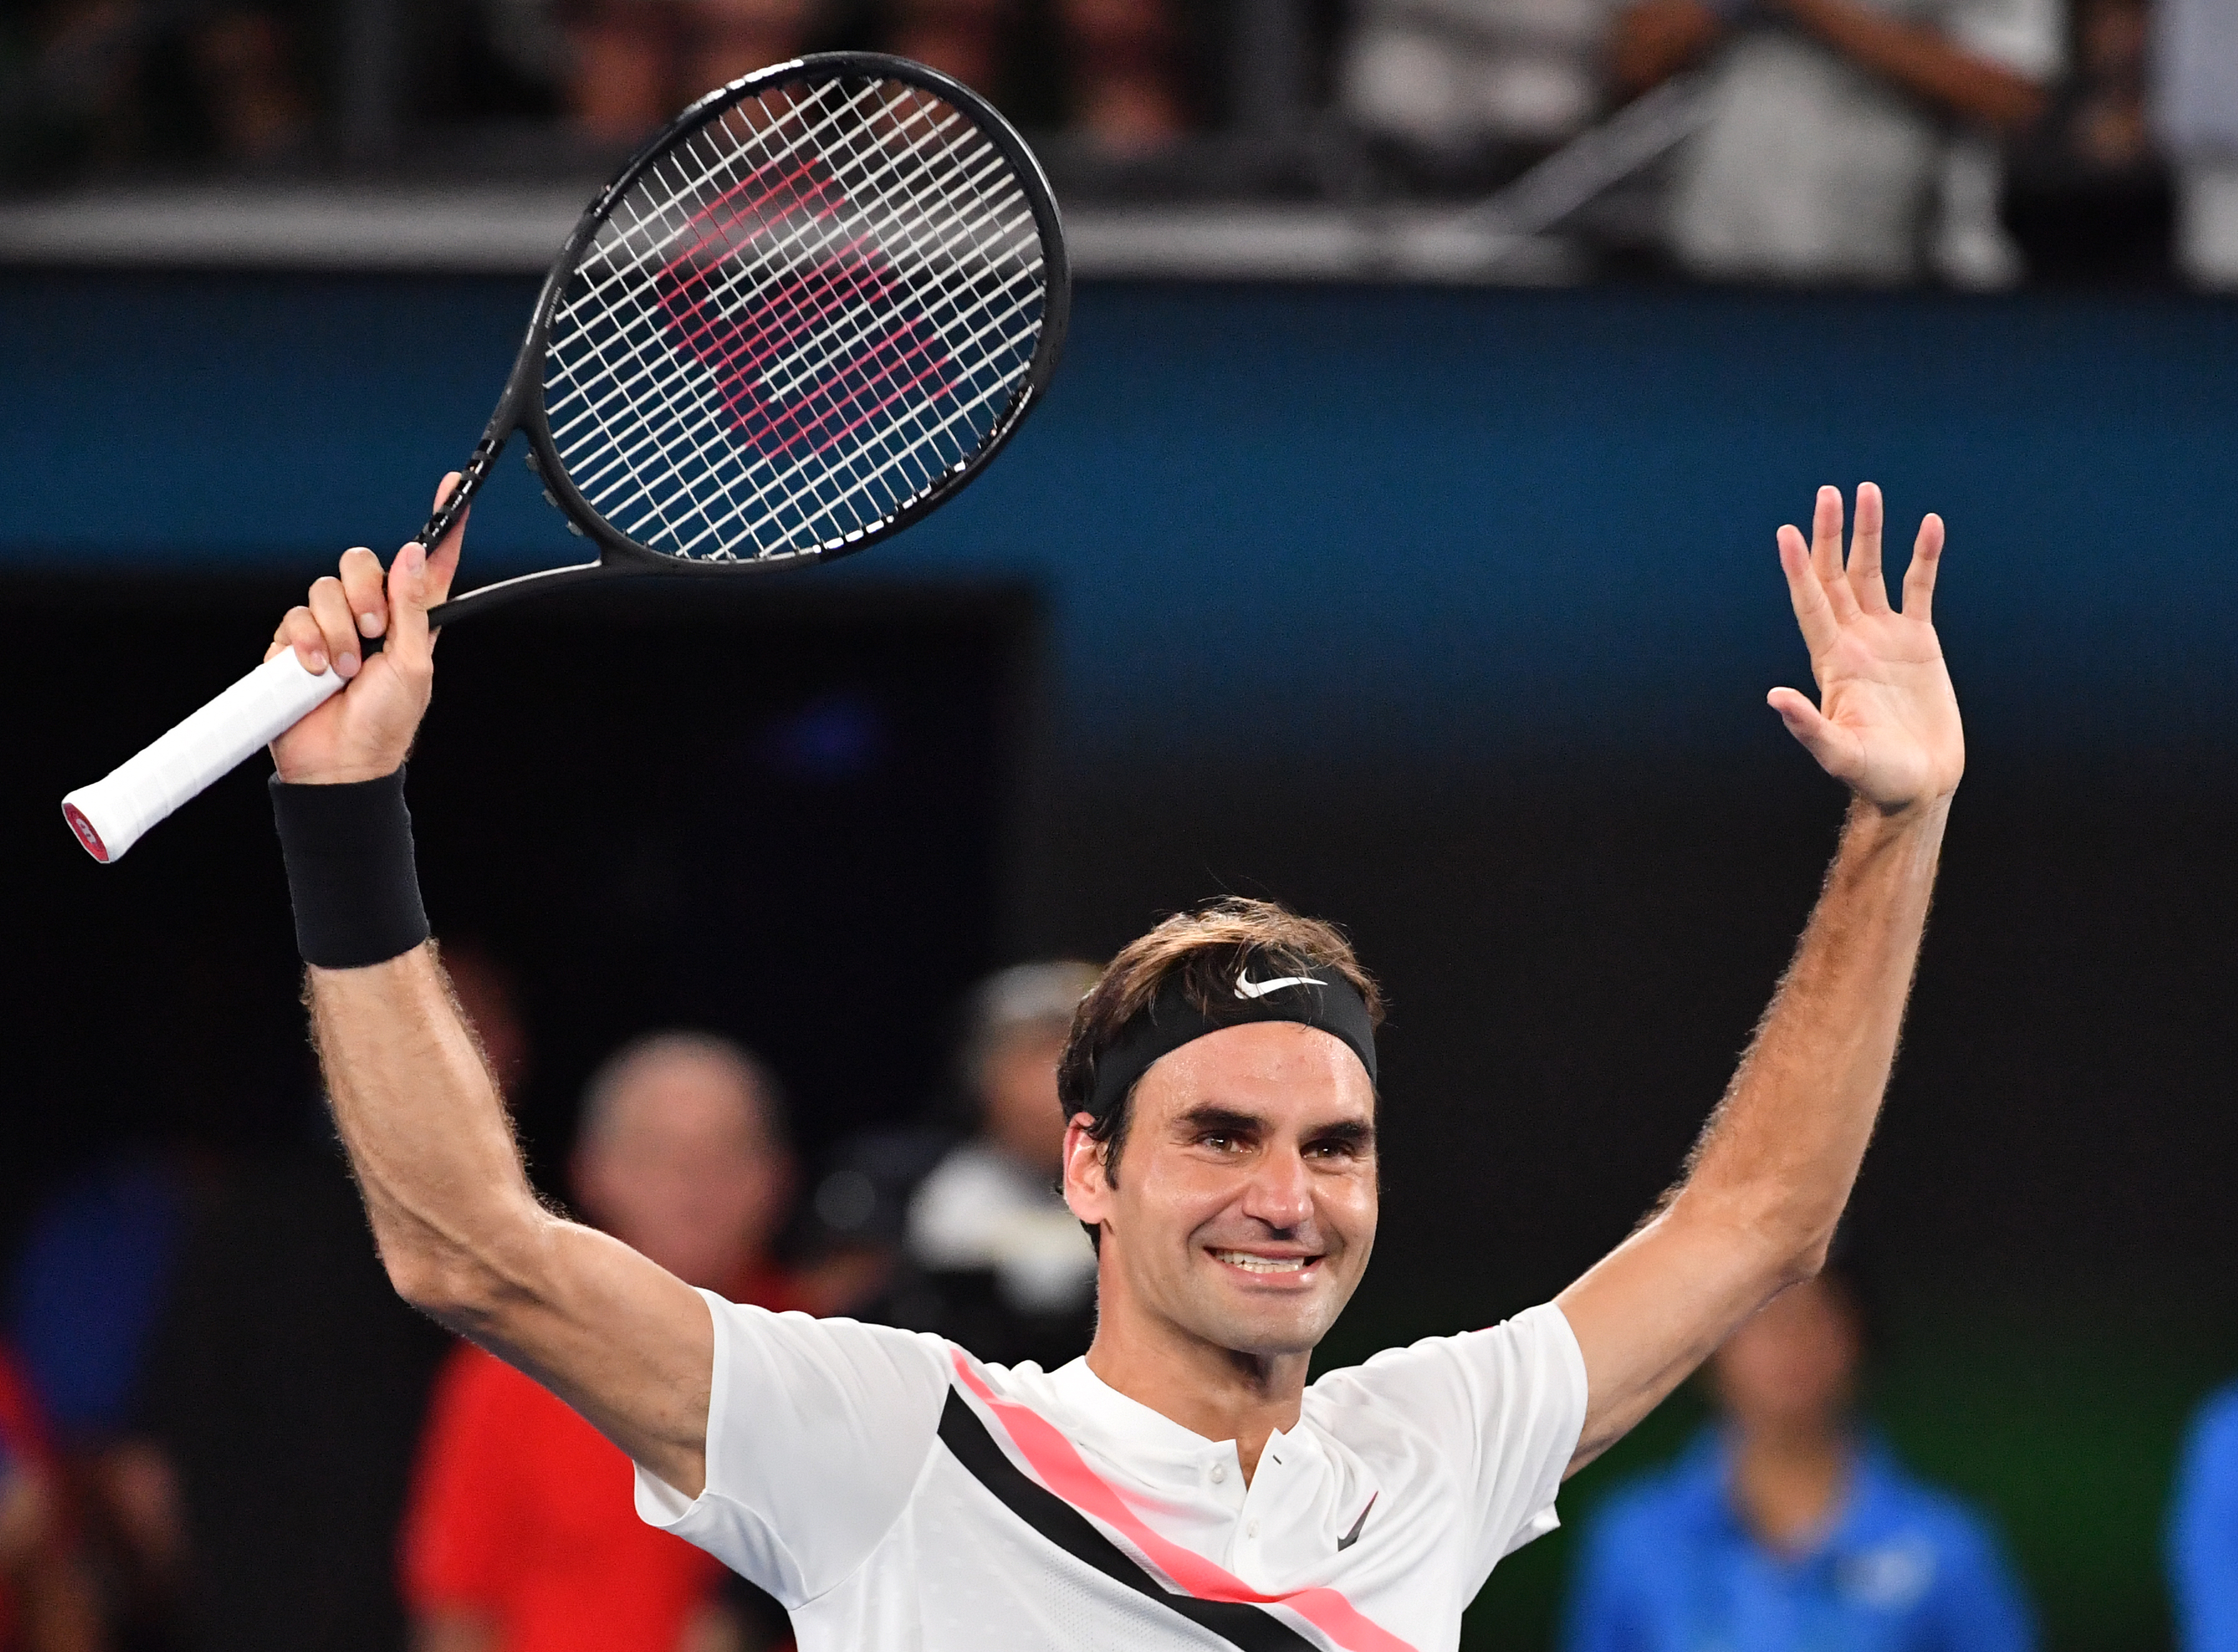 Minden idők legnagyobbja: Roger Federer 20. Grand Slam-trófeáját nyerte az Australian Openen